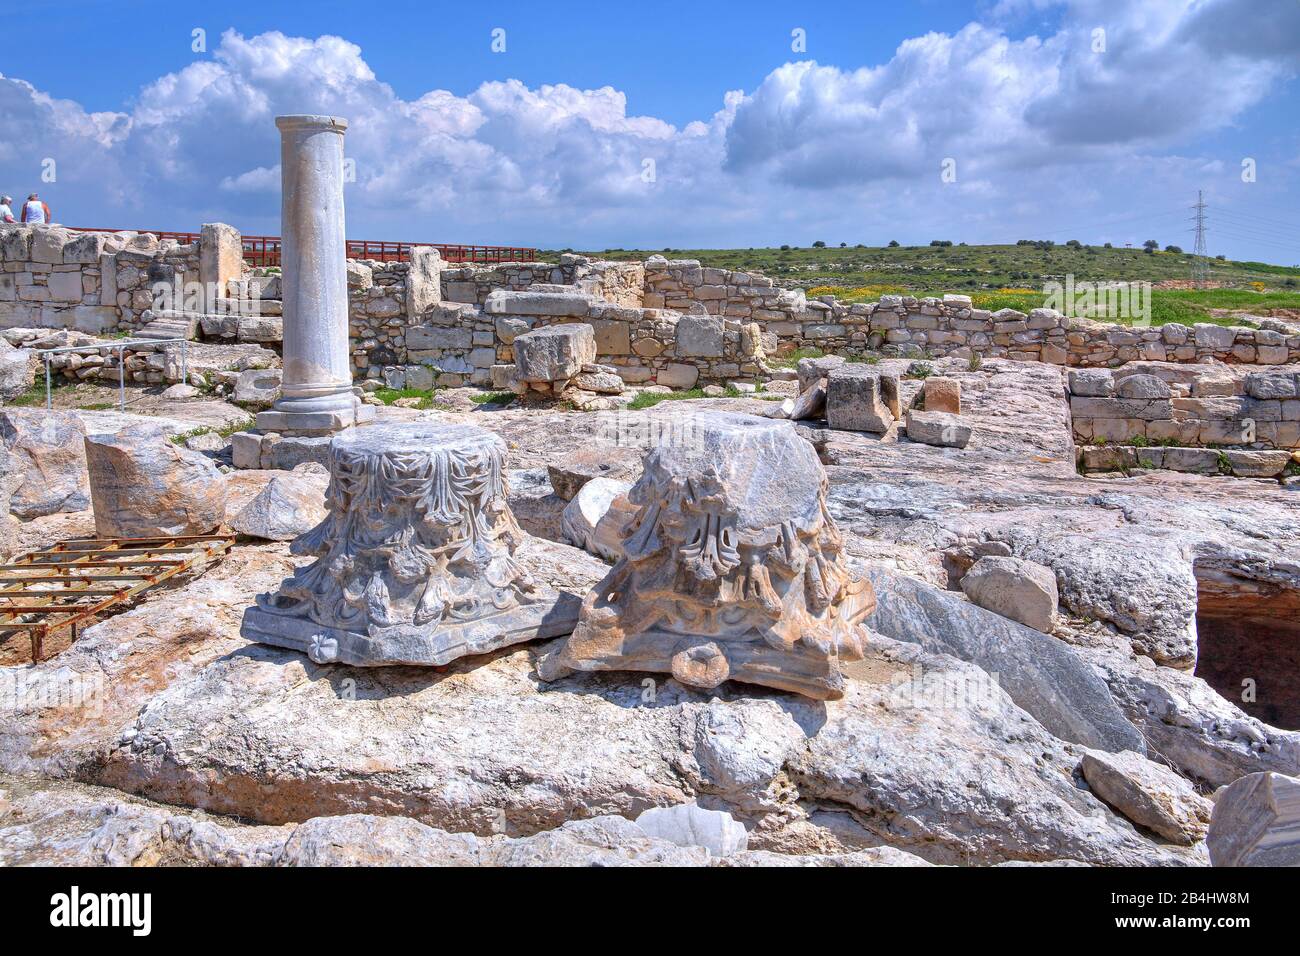 Les capitales du pilier Corinthien dans le site archéologique antique Kourion à Limassol, côte méditerranéenne, Chypre Banque D'Images